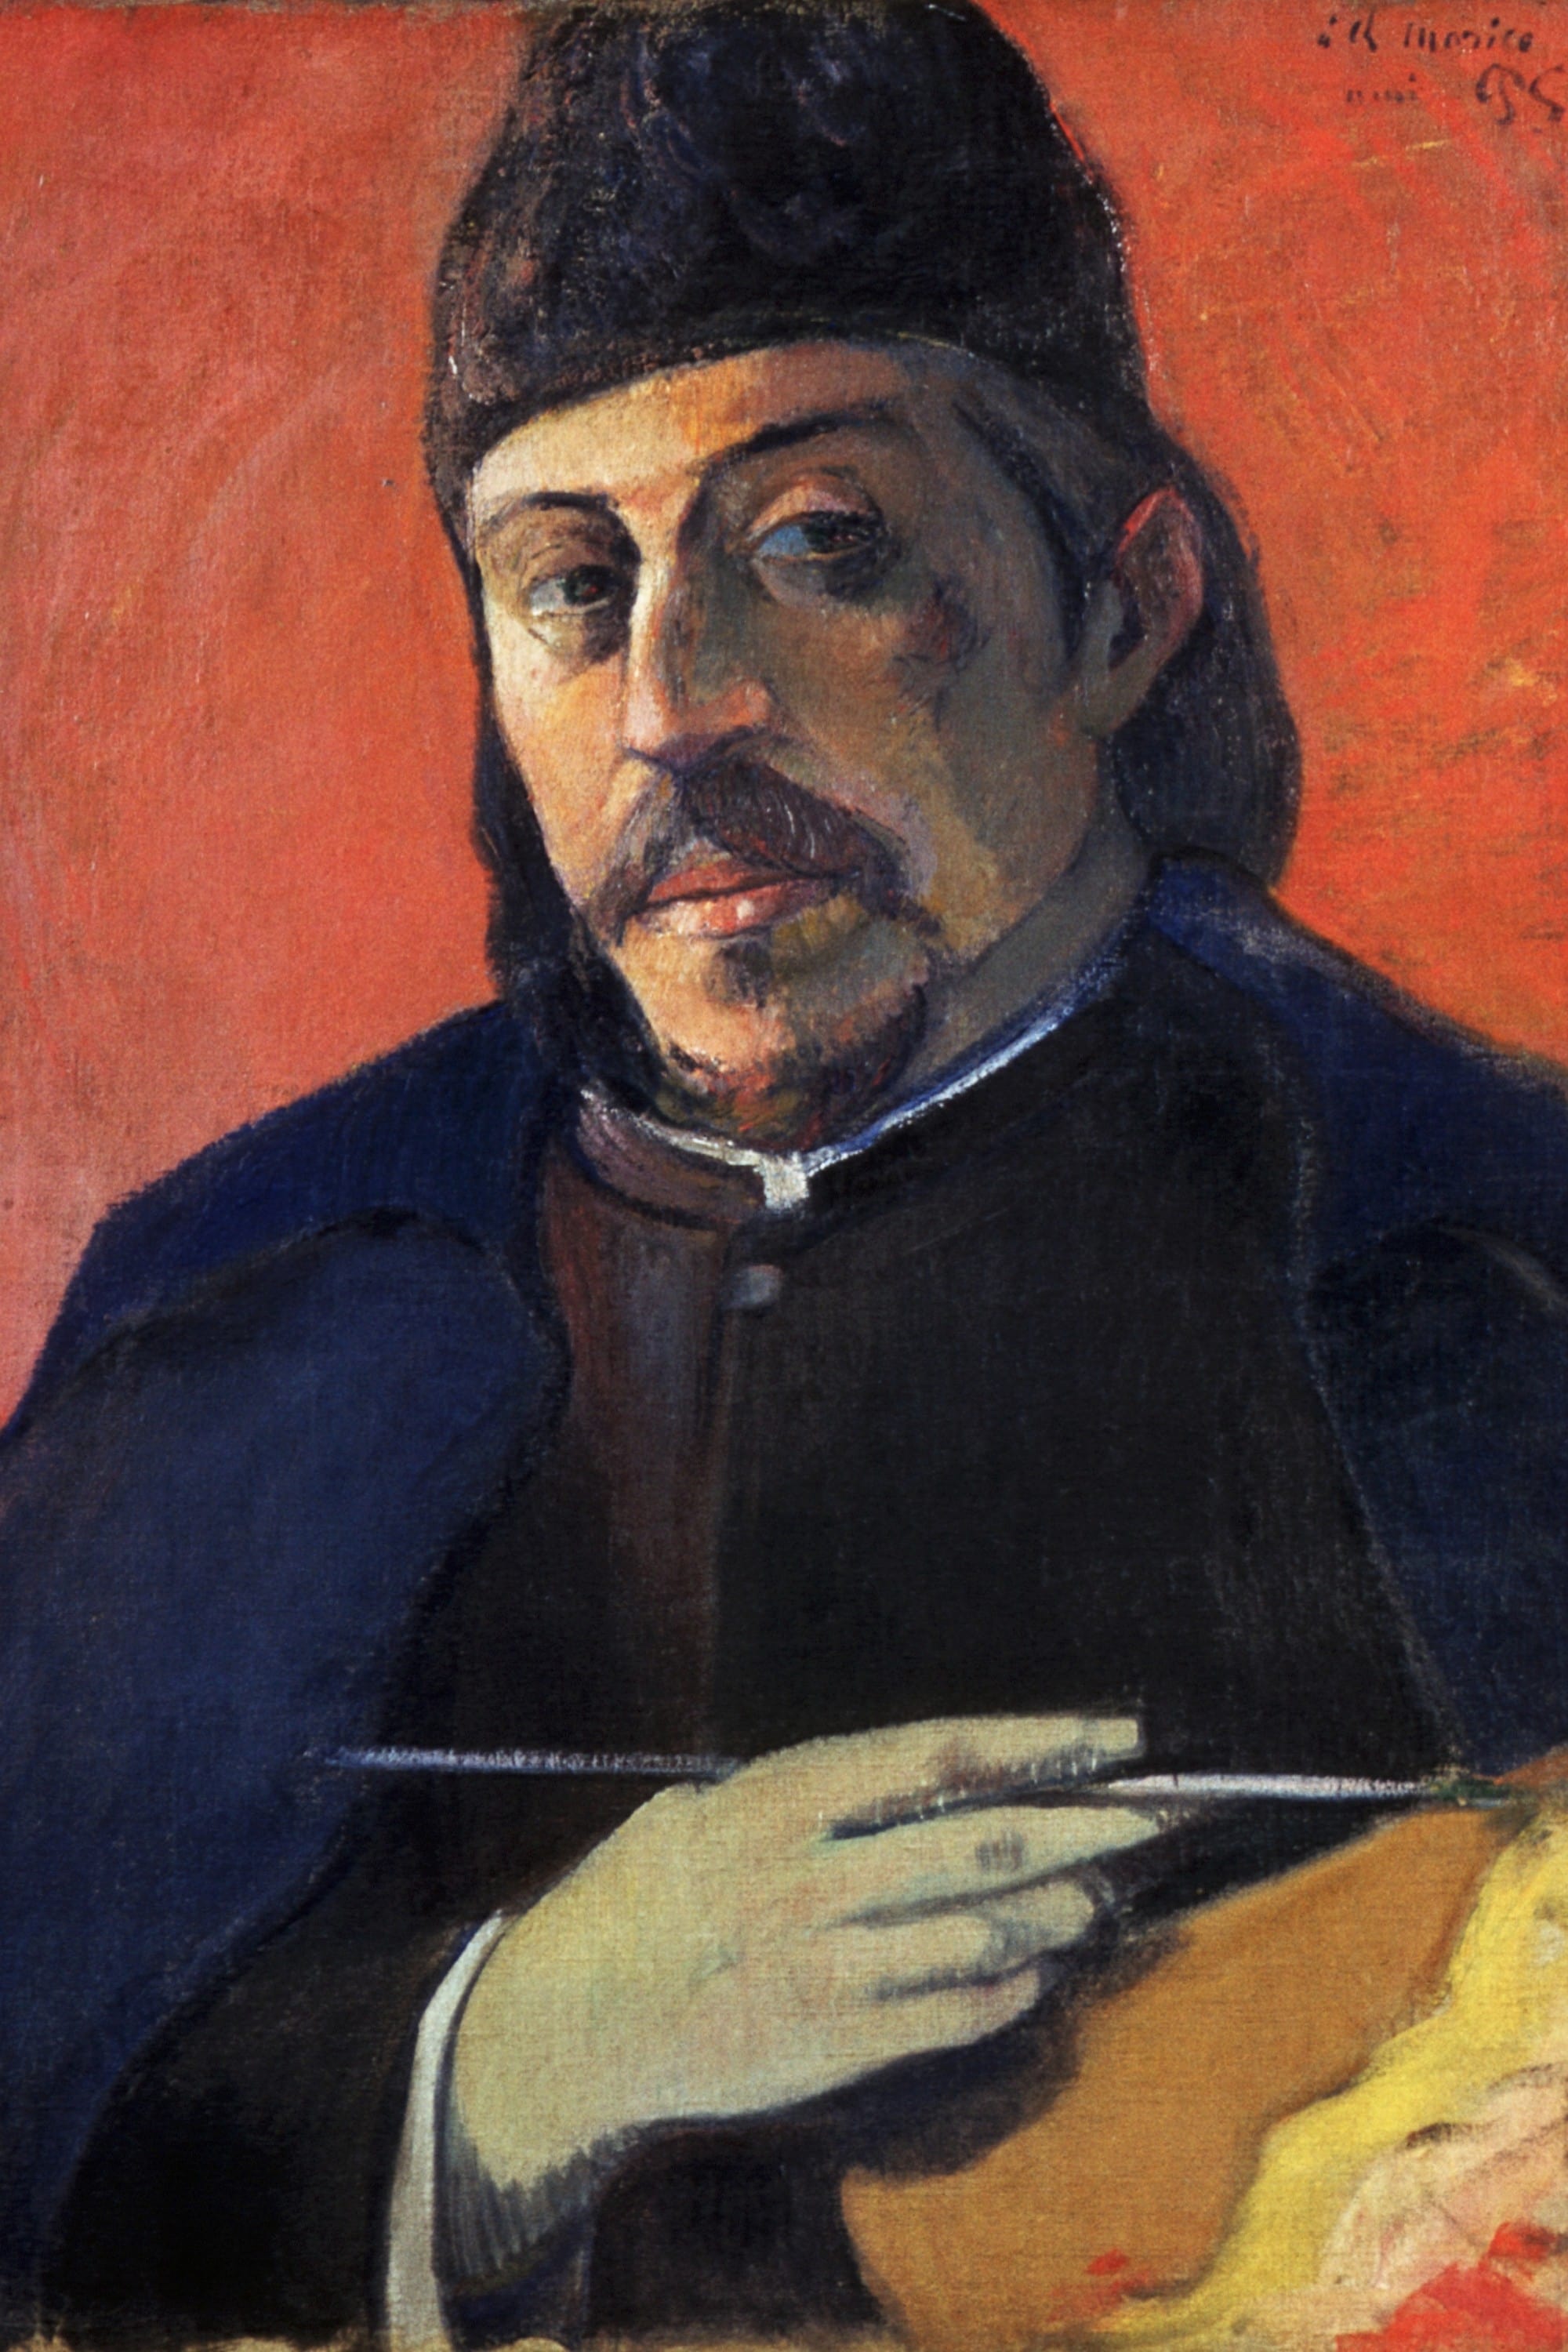 Les plus grands peintres du monde : Paul Gauguin